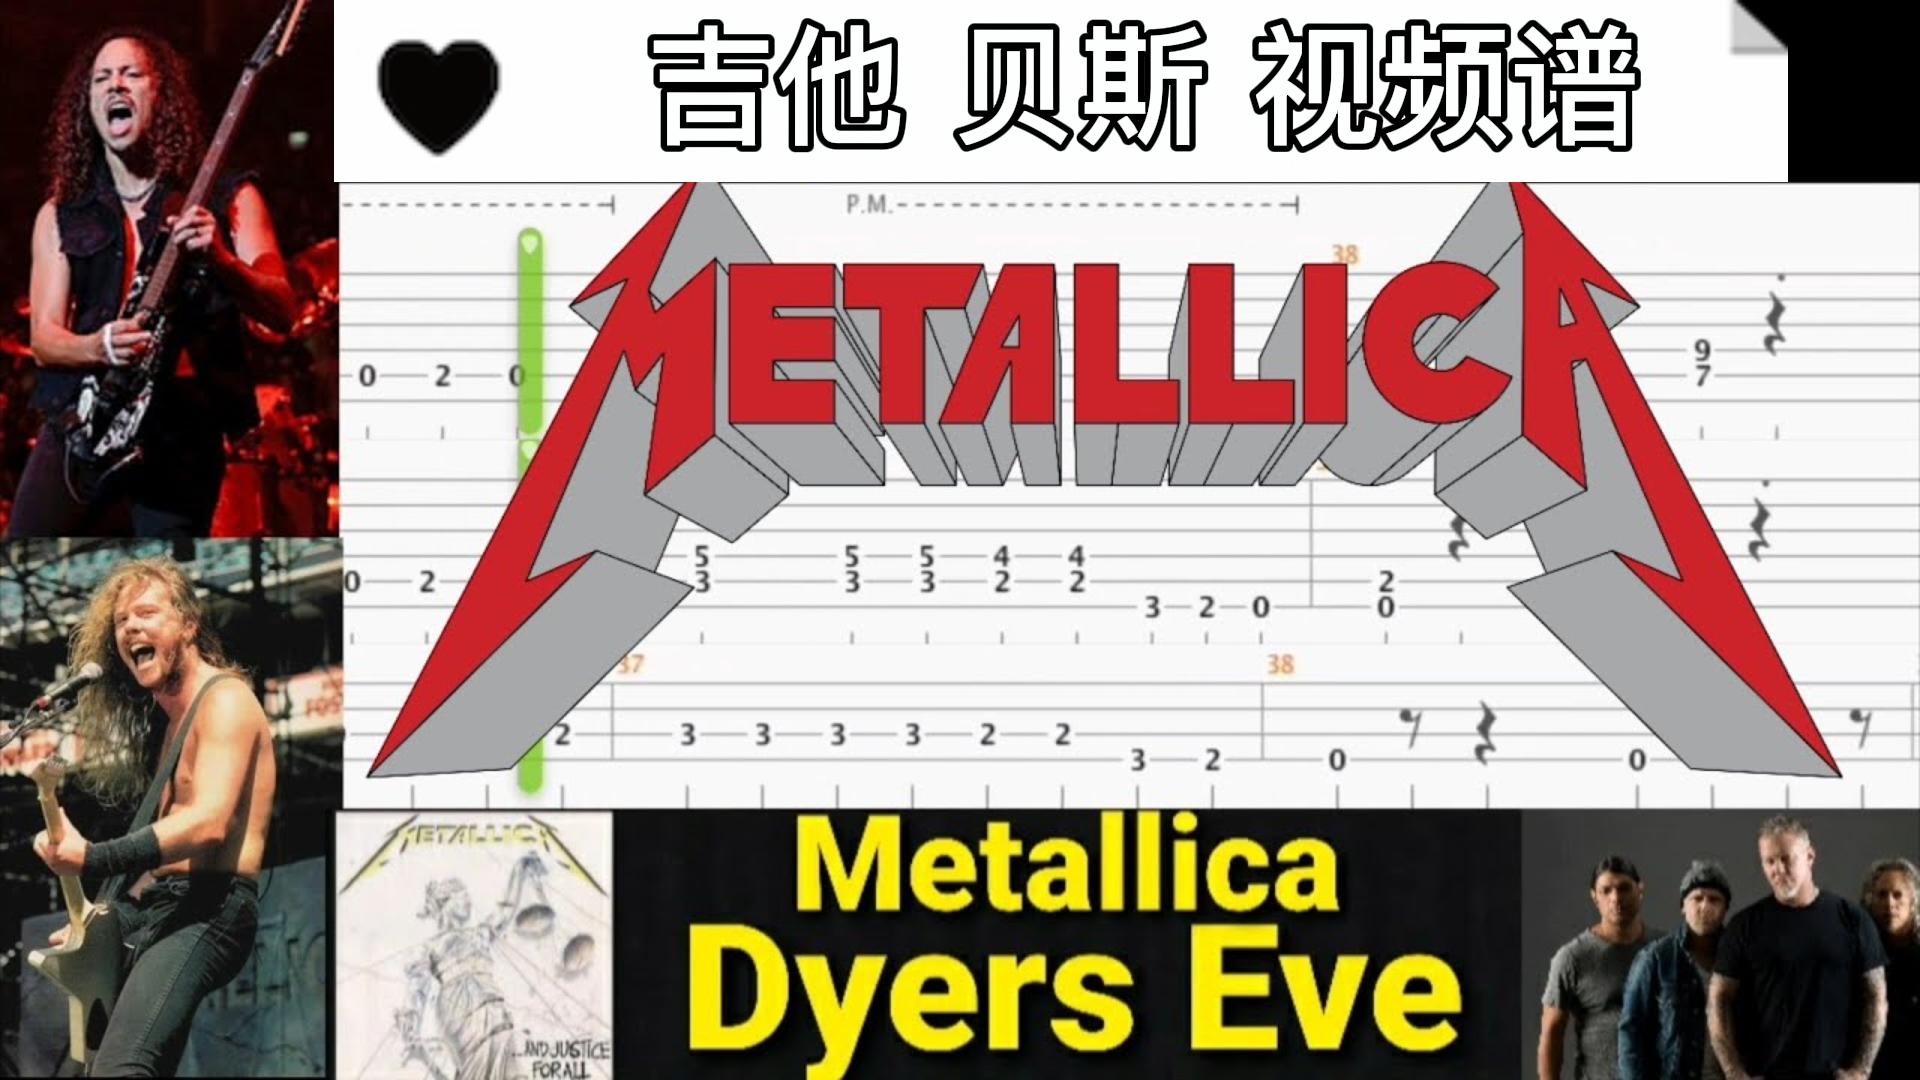 Metallica 乐队名曲《Dyers Eve》吉他 贝斯 视频谱-古桐博客